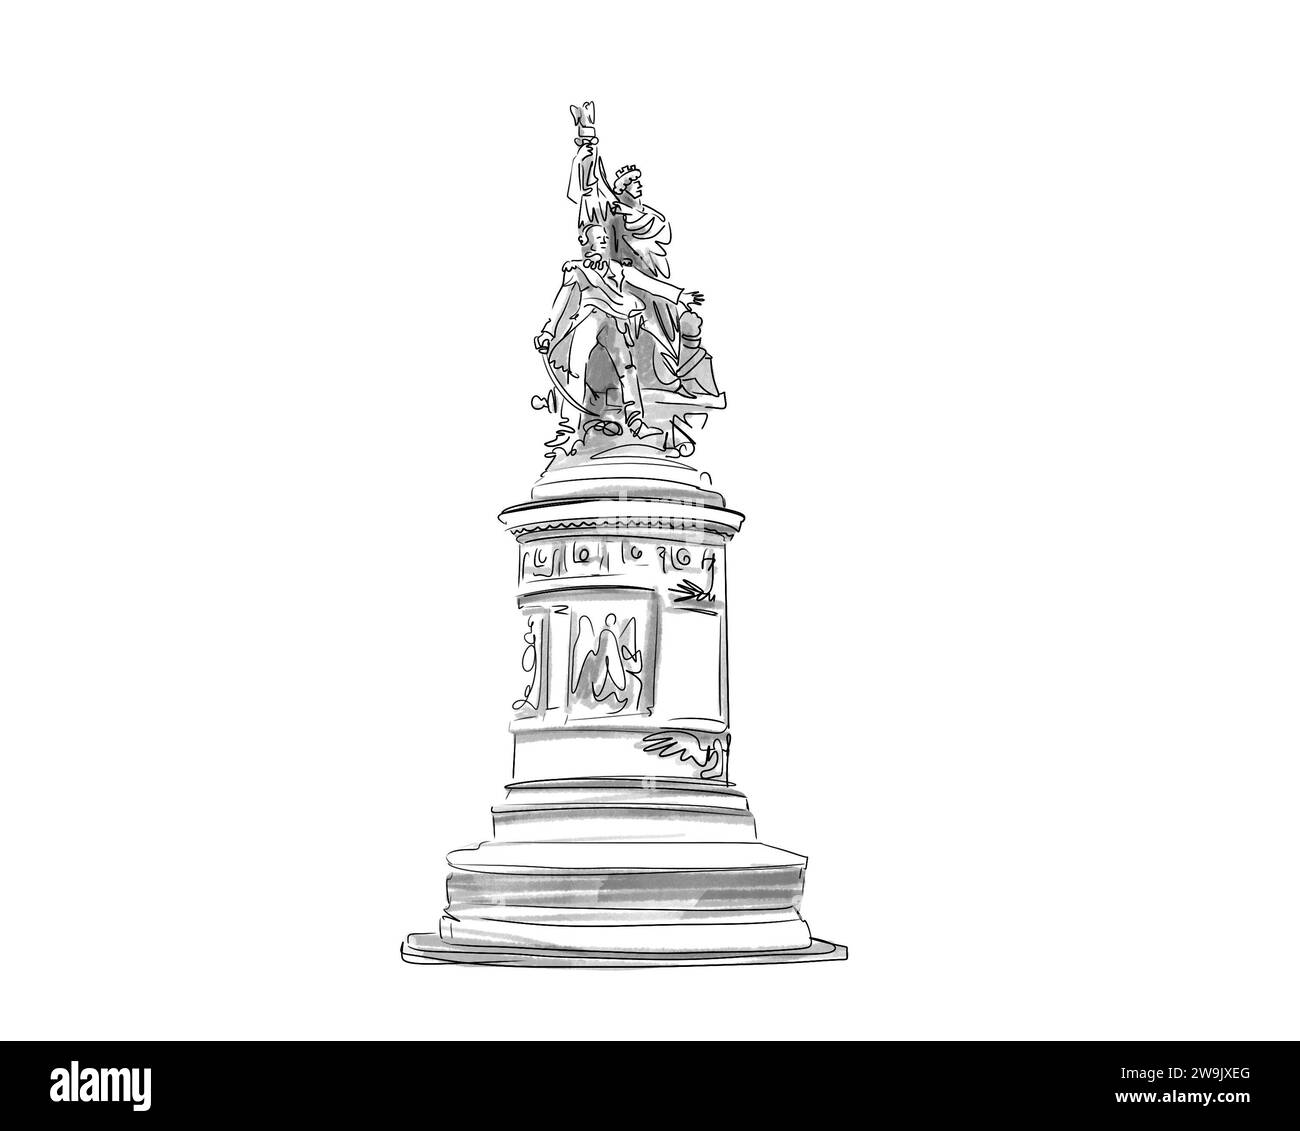 Illustration en noir et blanc de monument de Paris, place de Clichy Stock Photo